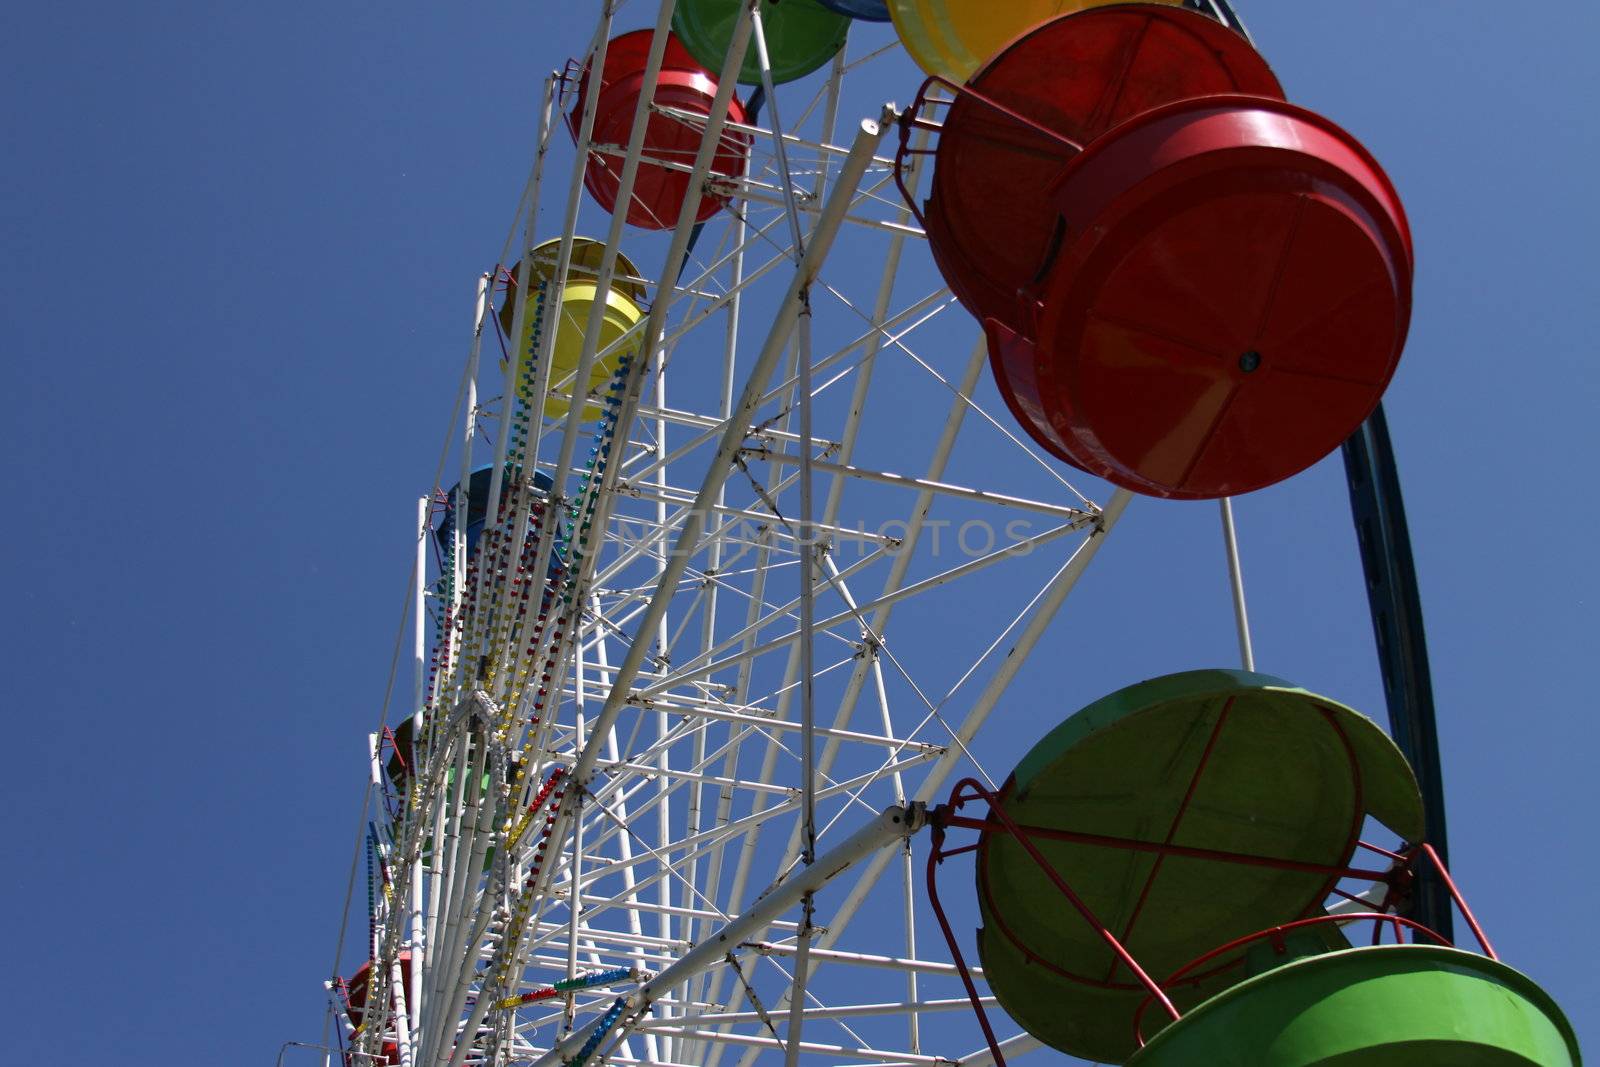 Ferris wheel close up over blue sky.